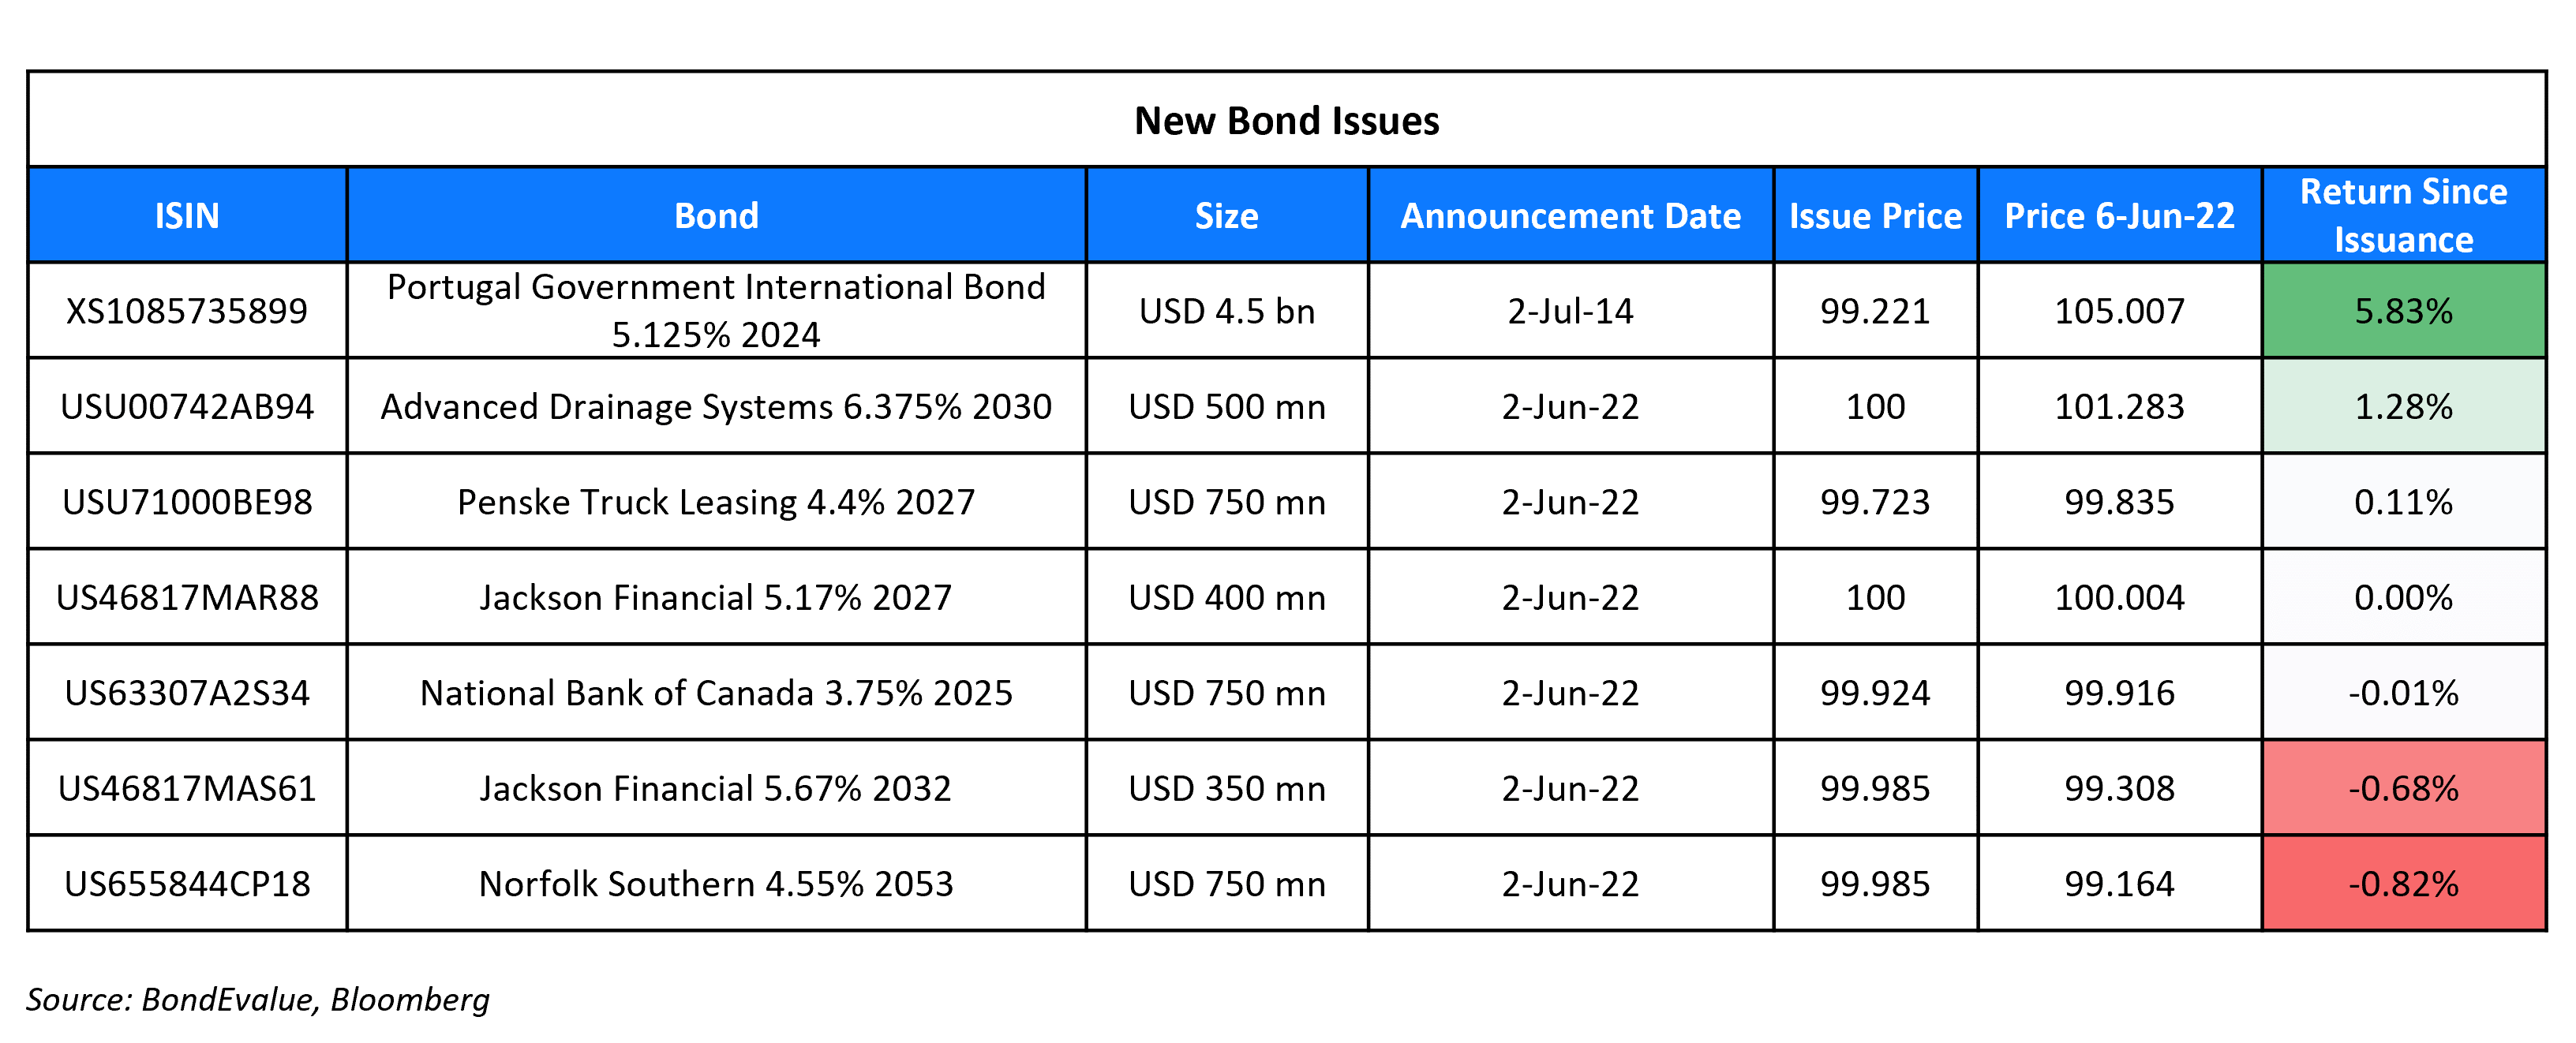 New Bond Issues 6 Jun 22